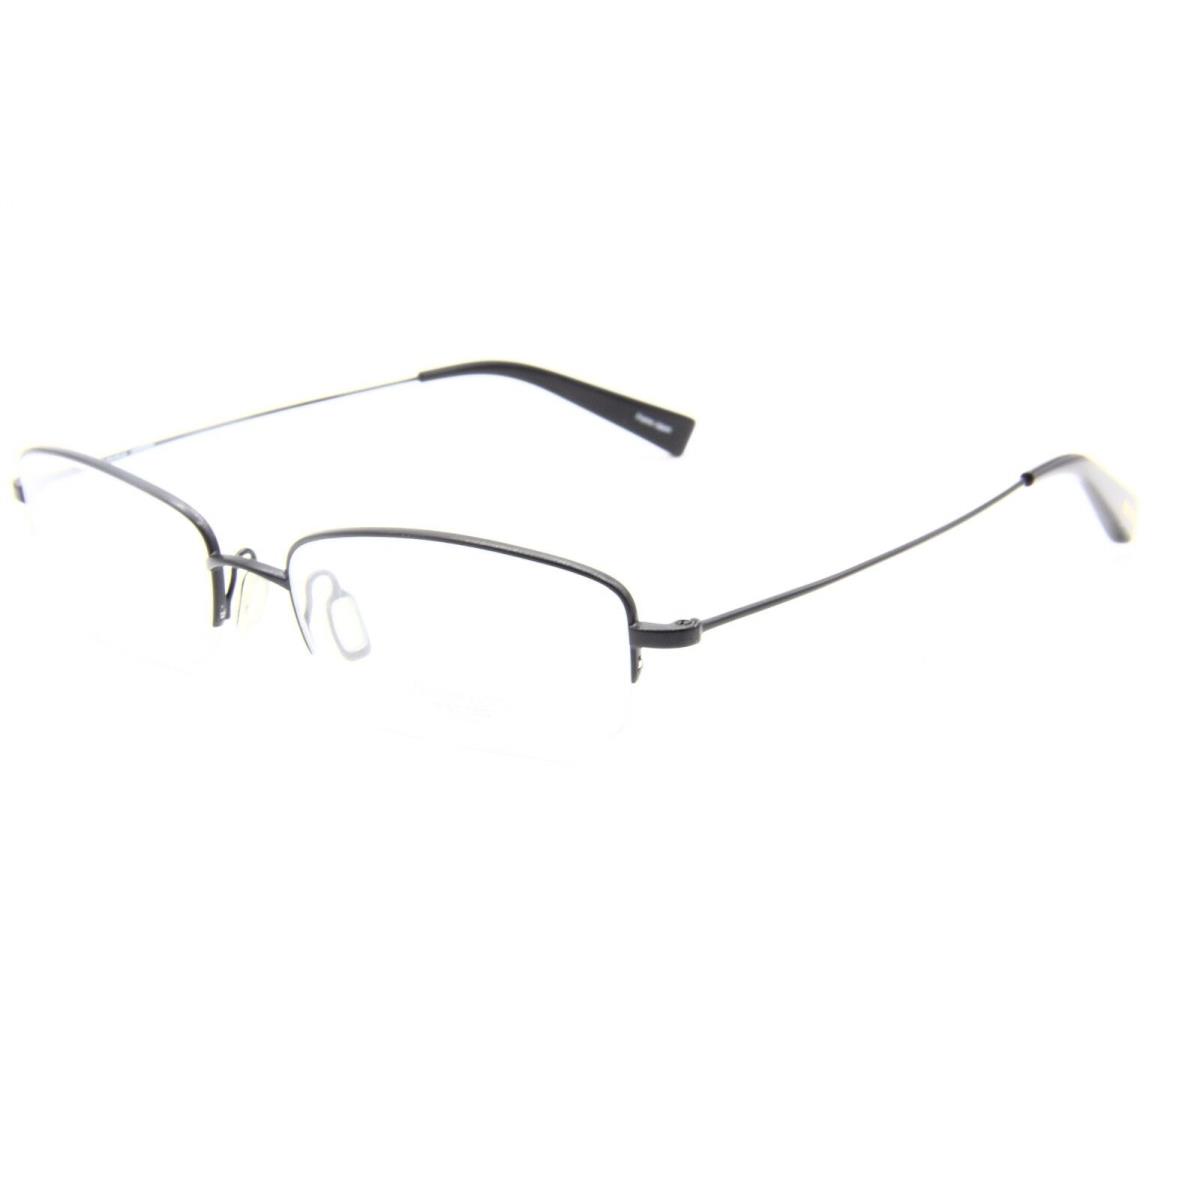 Oliver Peoples Garrick Mbk Eyeglasses Frame 52-17